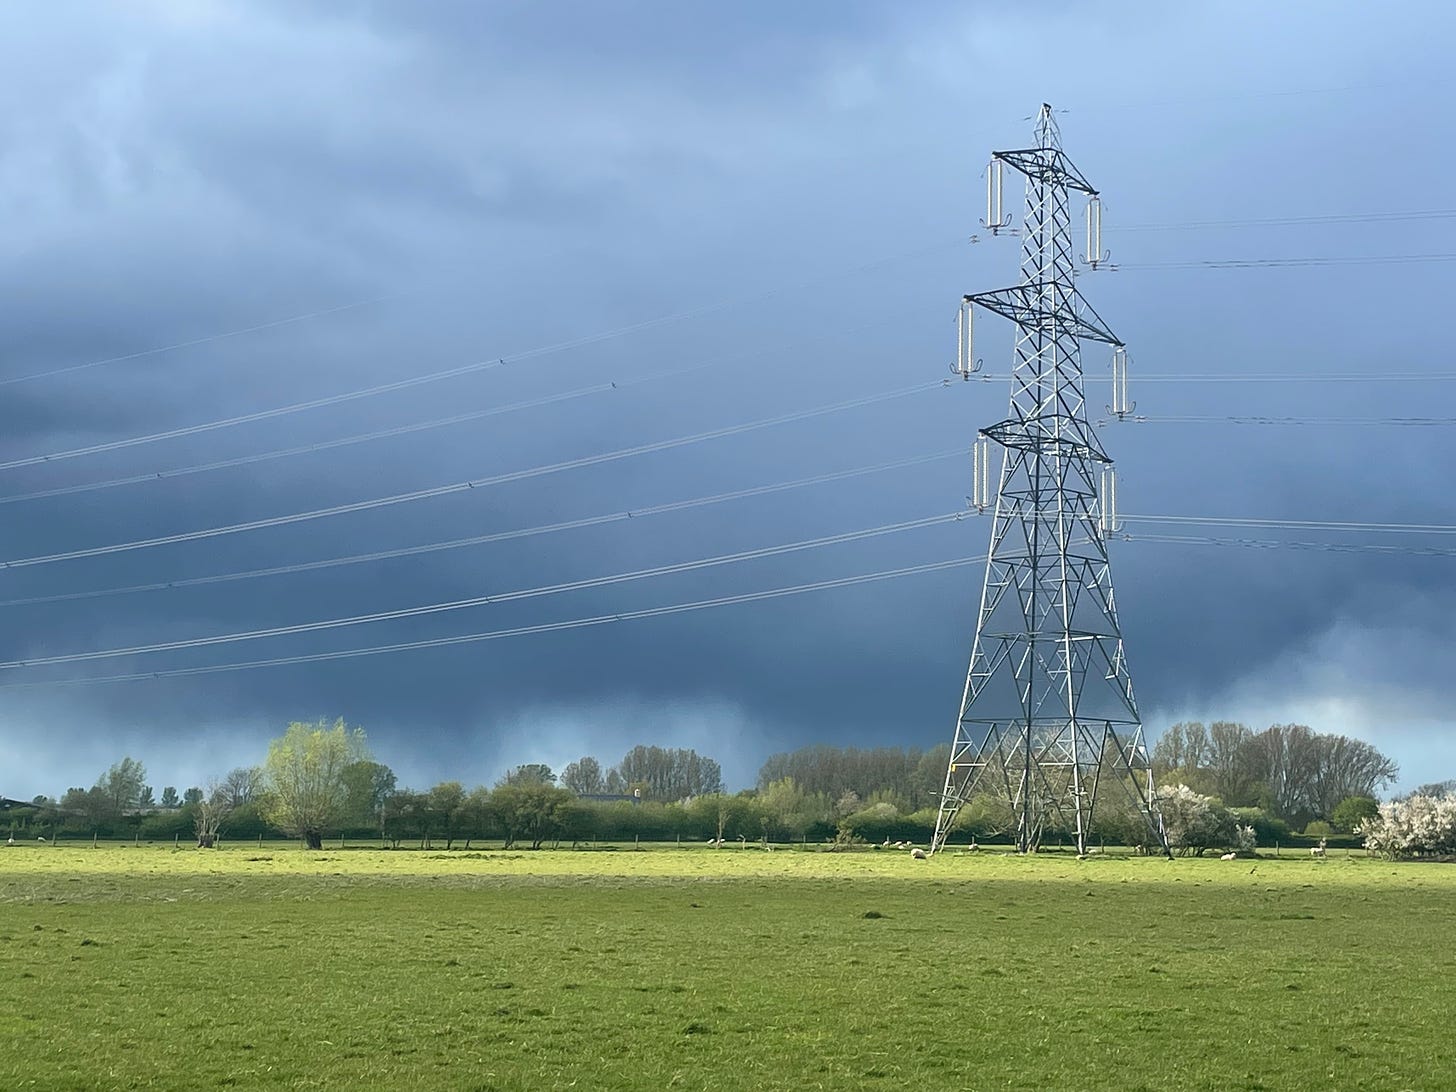 Dark clouds behind a power line